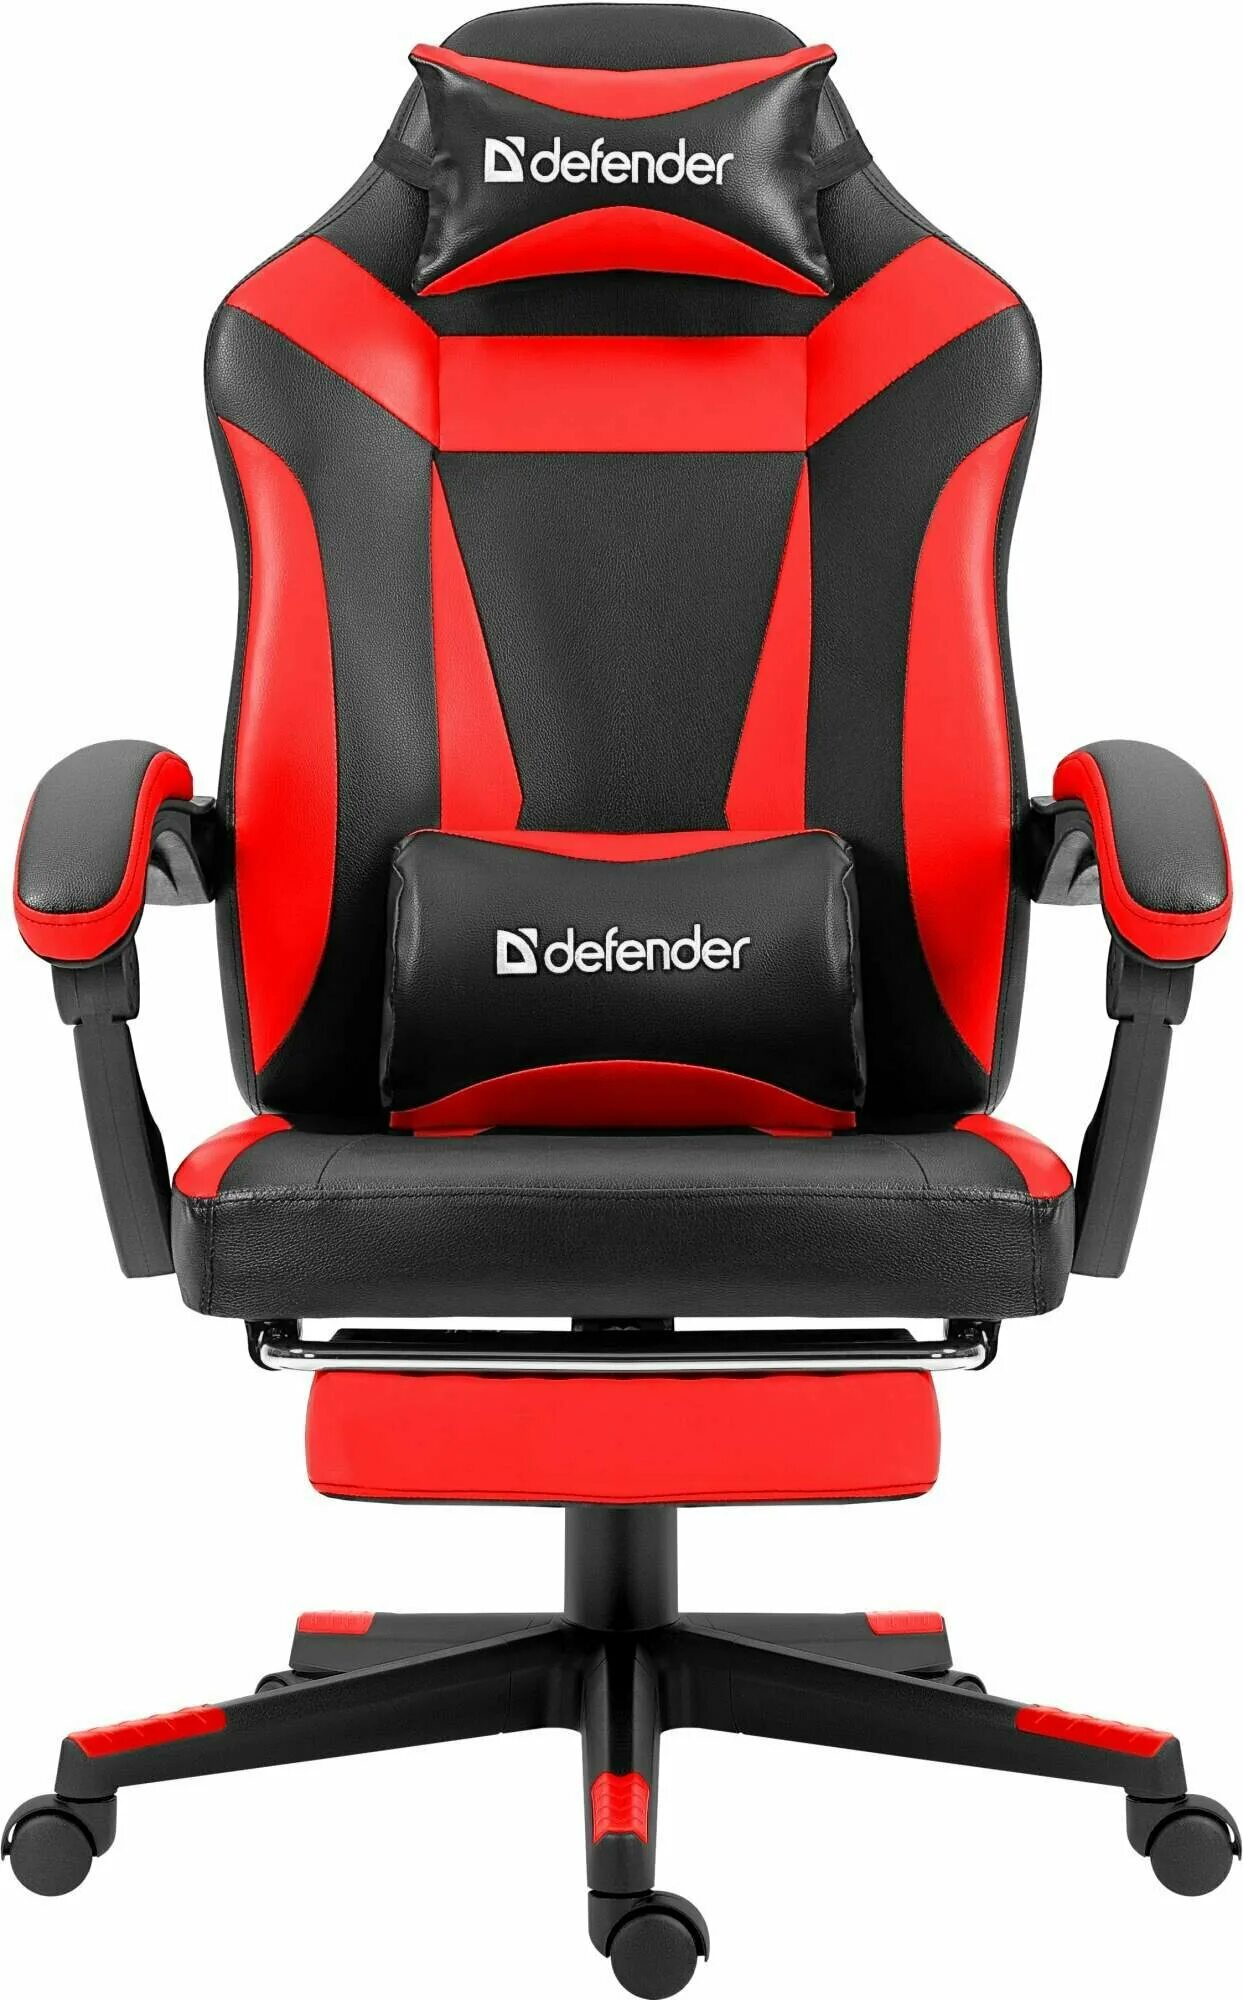 Игровое компьютерное кресло defender. Игровое кресло Defender Cruiser черный/красный, PU, подножка. Игровое кресло Дефендер. Игровое кресло Дефендер черное. Кресло Defender 22070.